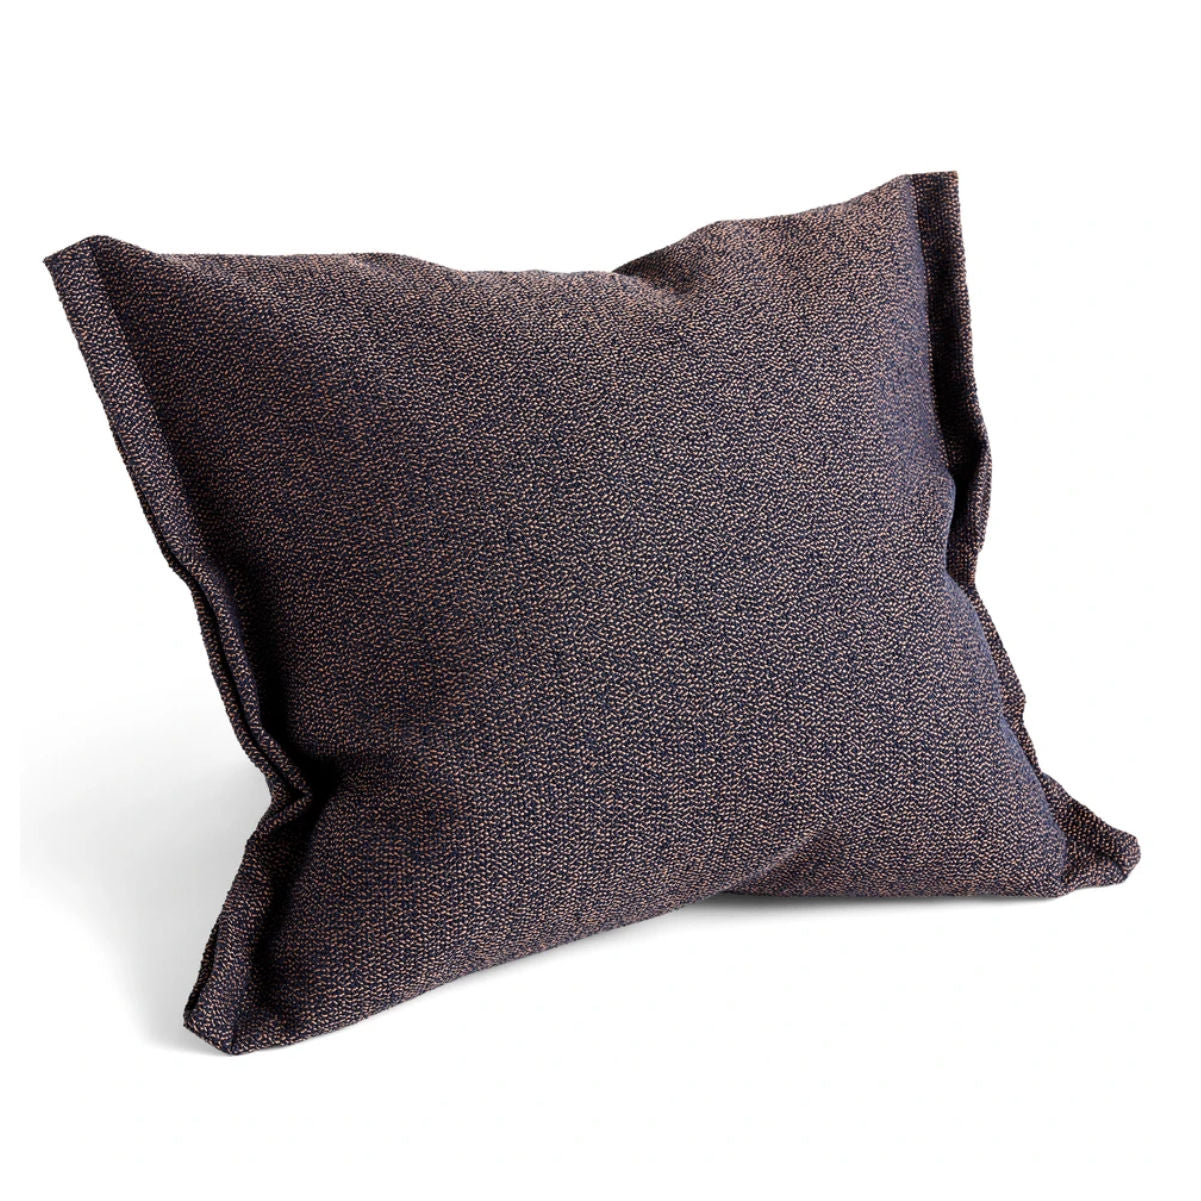 Hay Plica Sprinkle cushion, dark blue